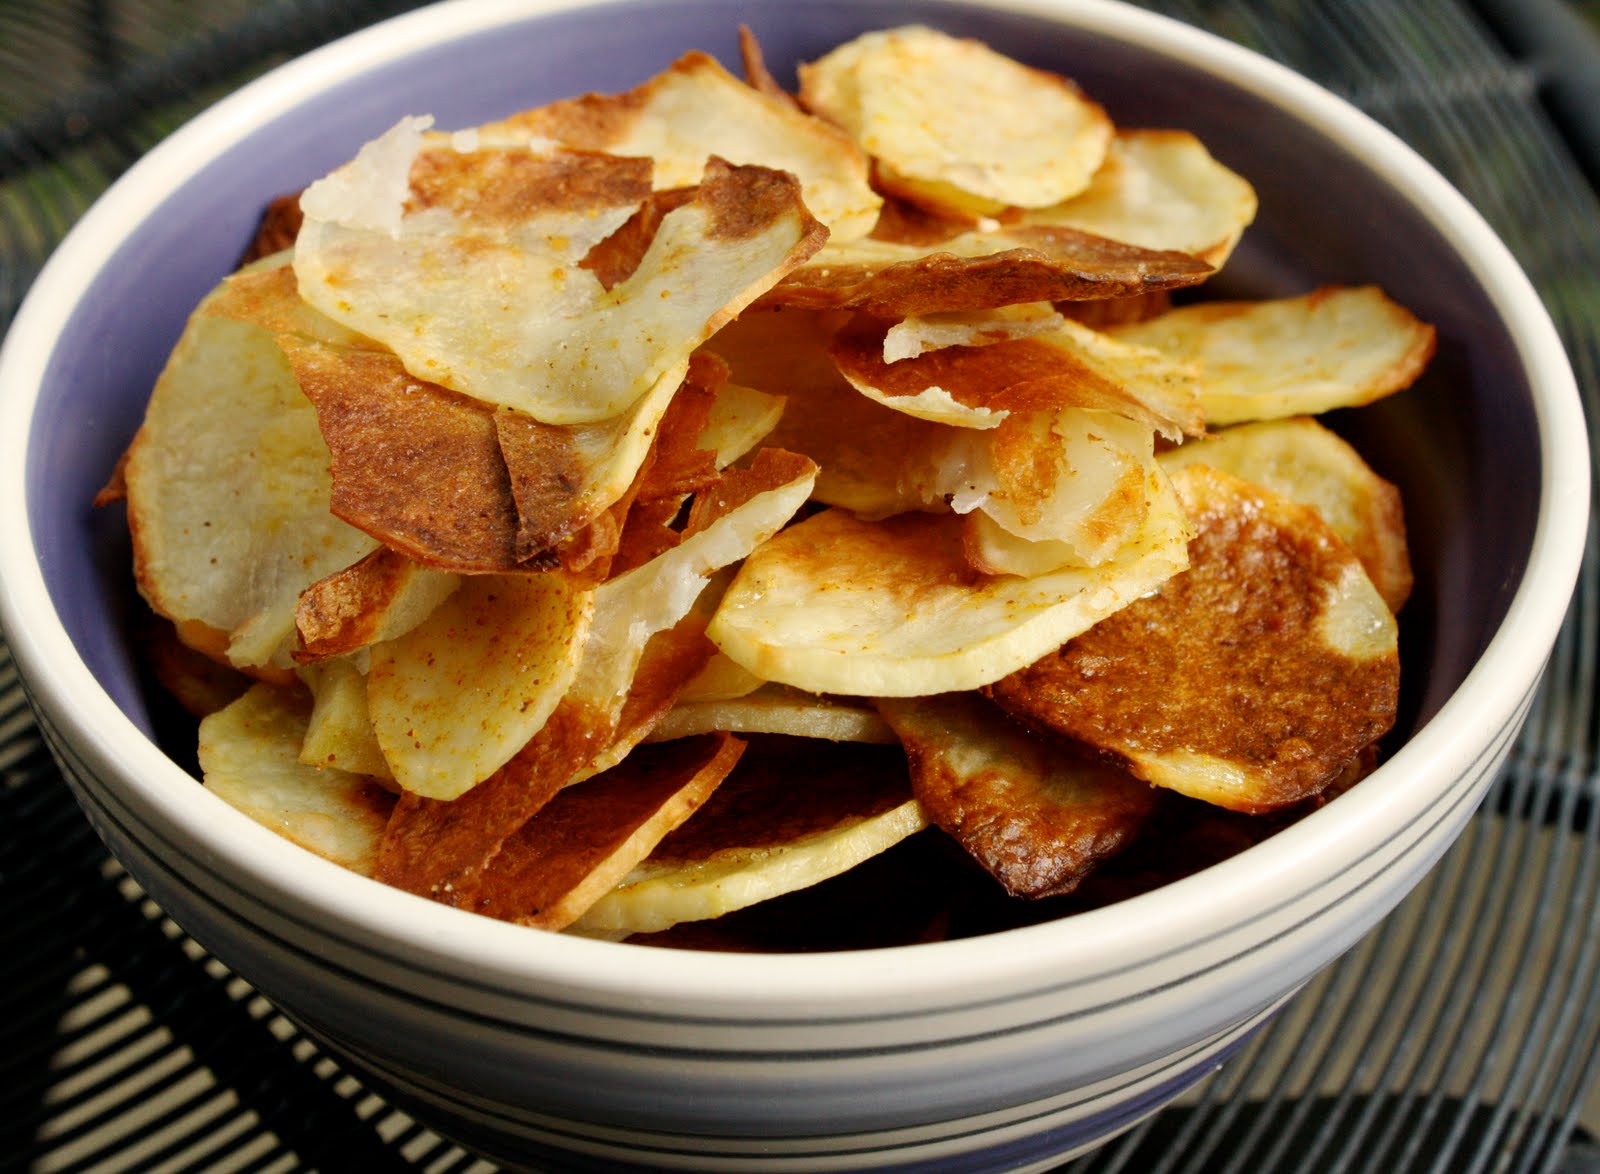 Картофельные чипсы в духовке в домашних условиях рецепт с фото пошагово в духовке